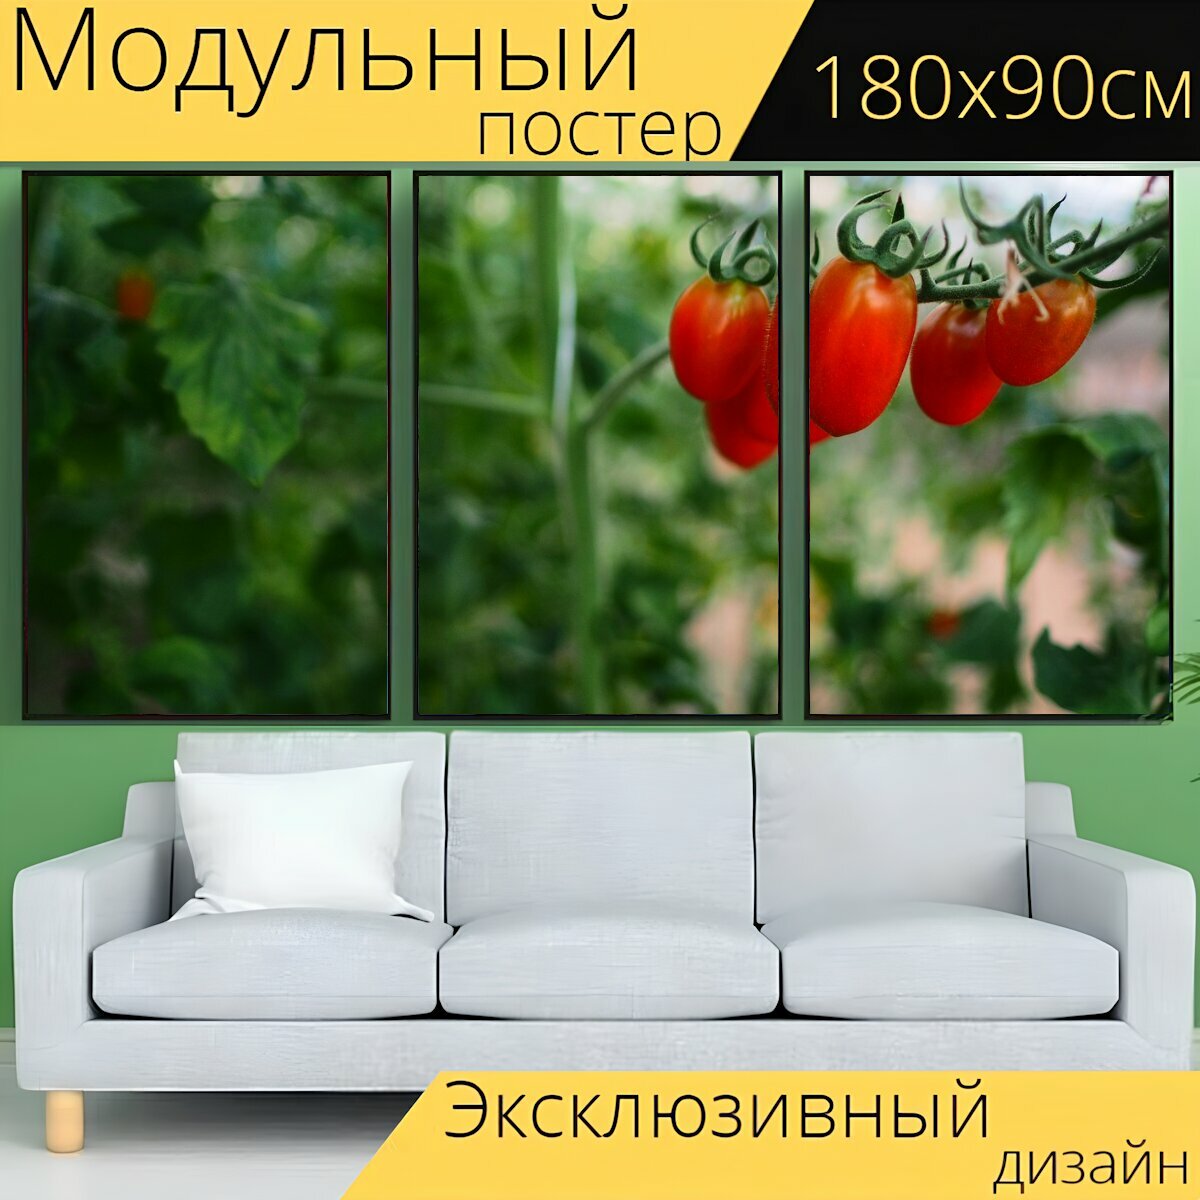 Модульный постер "Помидор, овощ, ферма" 180 x 90 см. для интерьера